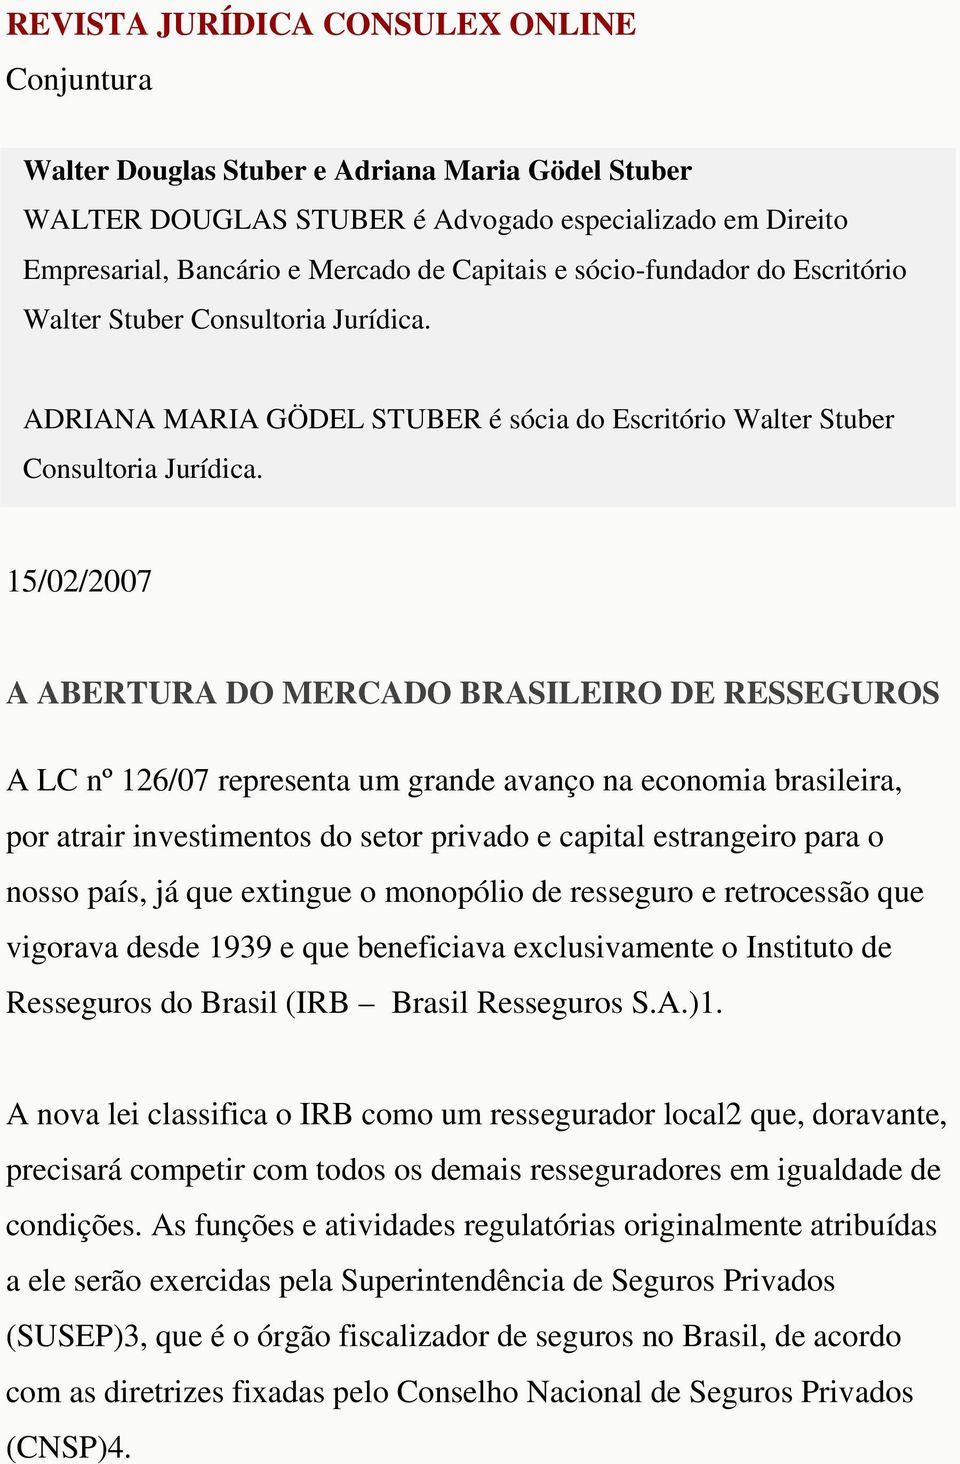 15/02/2007 A ABERTURA DO MERCADO BRASILEIRO DE RESSEGUROS A LC nº 126/07 representa um grande avanço na economia brasileira, por atrair investimentos do setor privado e capital estrangeiro para o